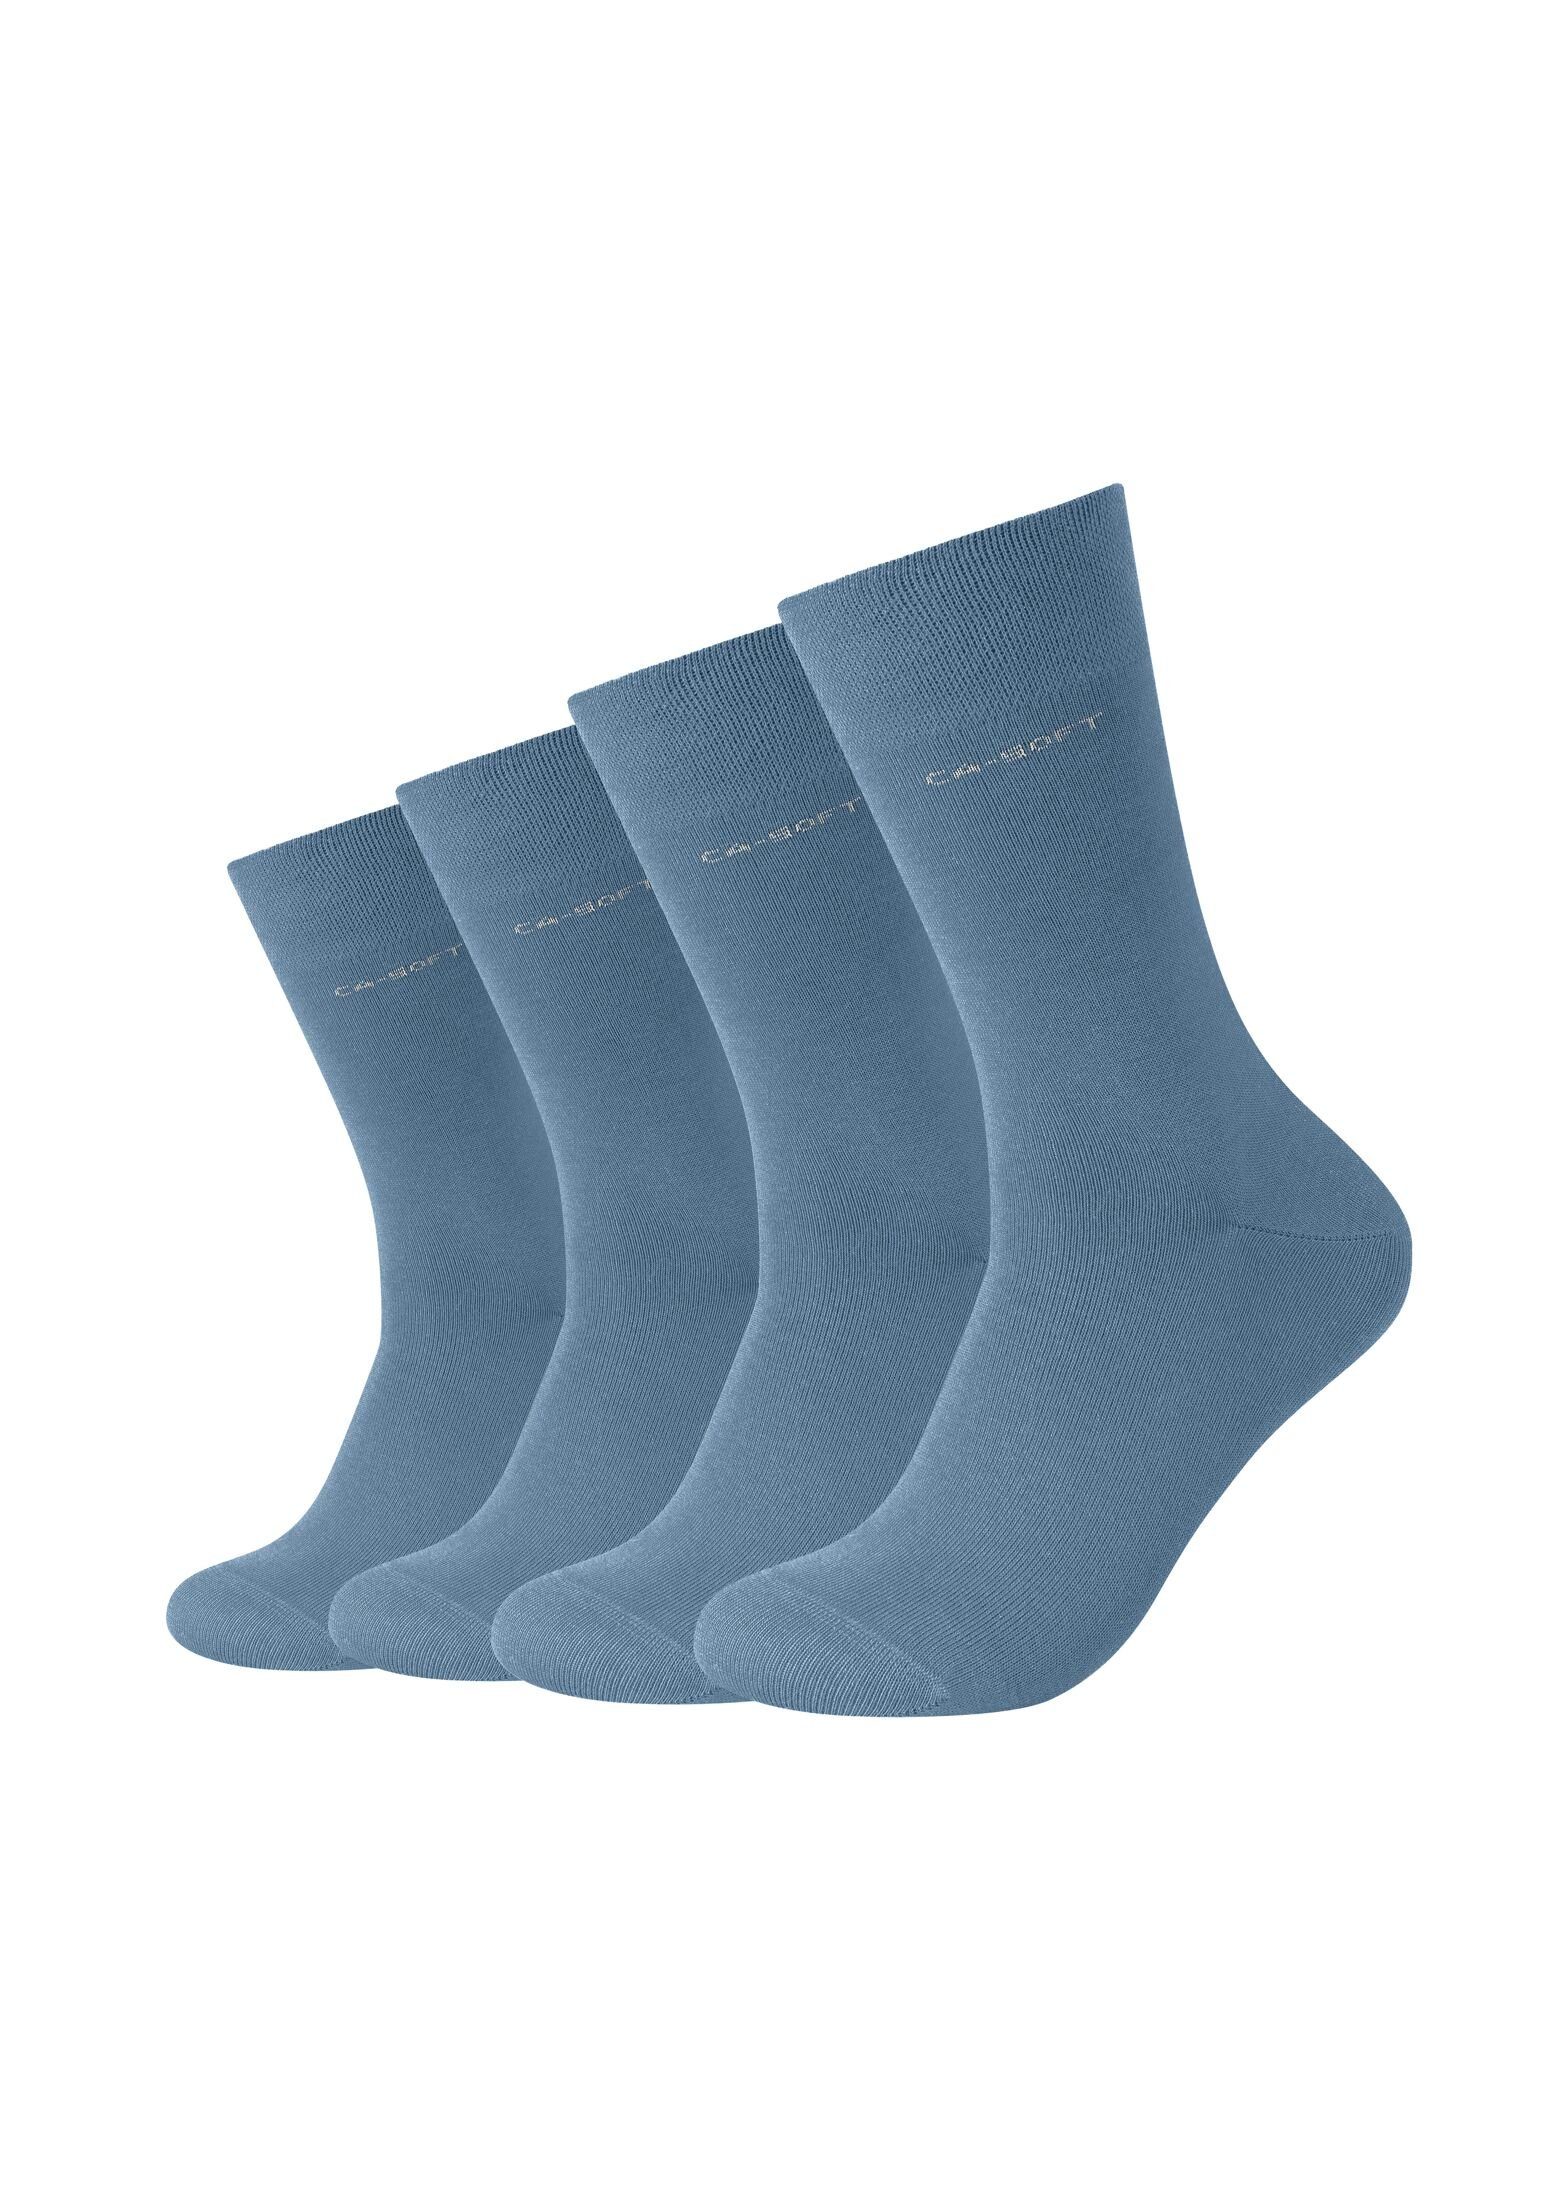 Komfortbund Bequem Socken Damen Herren Businesssocken blue Socken für Camano captain's und